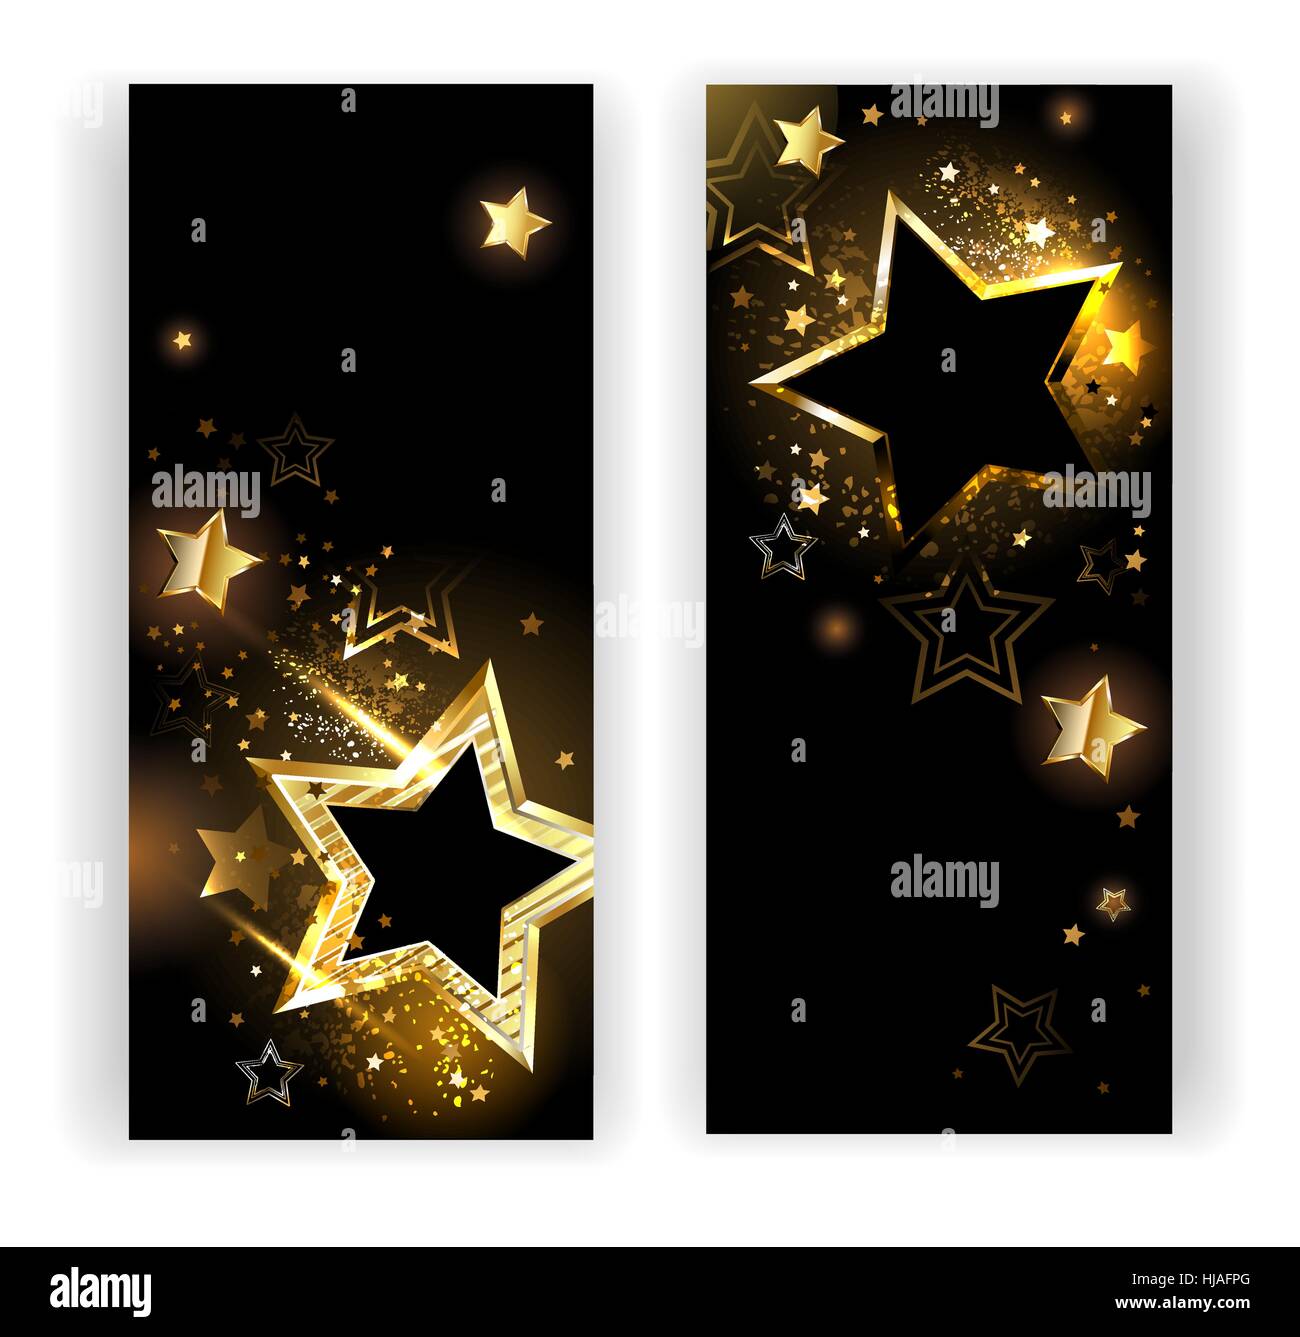 zwei vertikale Banner mit glänzenden goldenen Sternen auf einem schwarzen Hintergrund. Stock Vektor